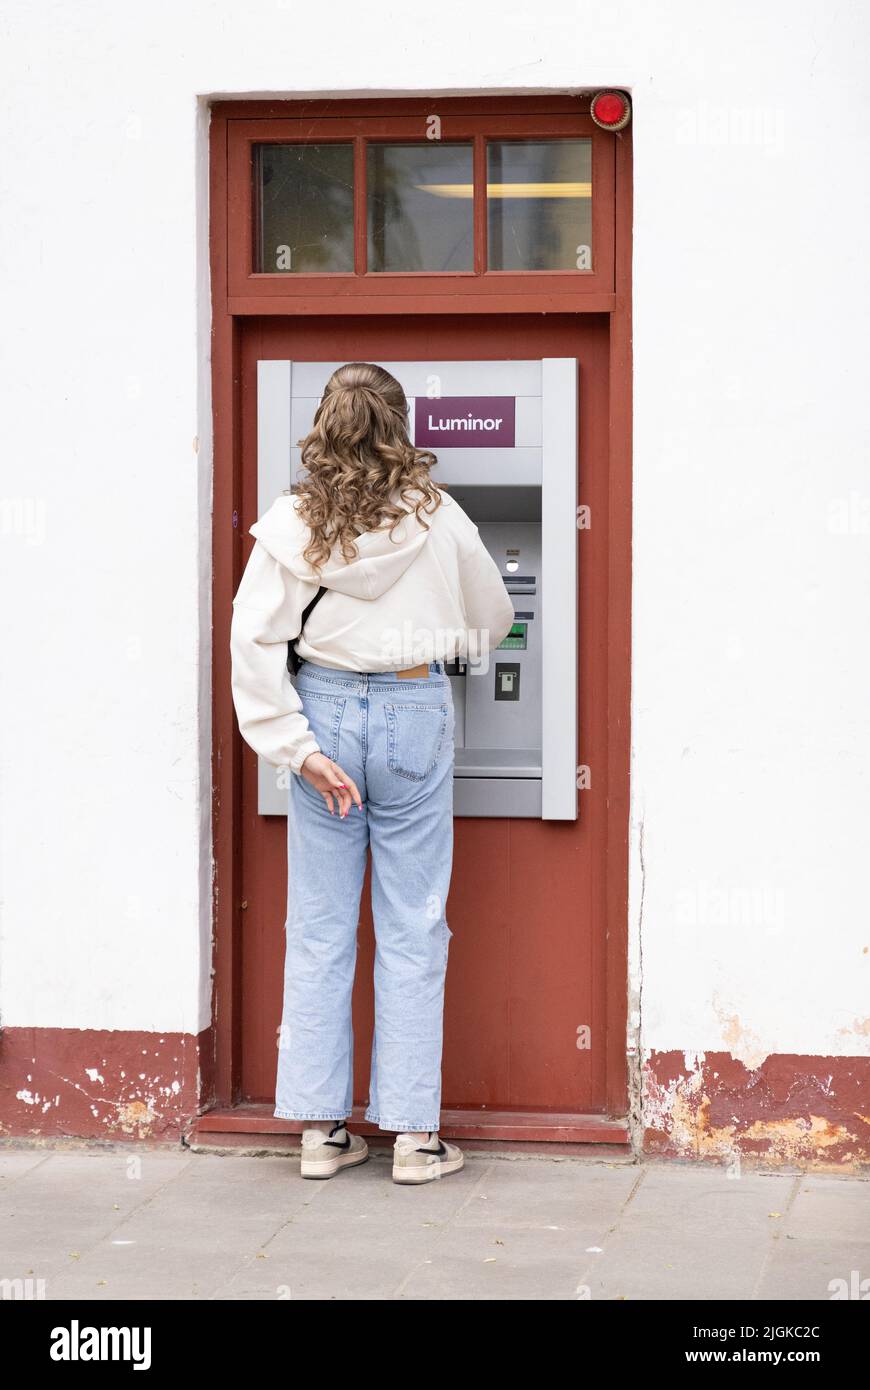 Estonia Bank - Vista posteriore di una donna che riceve denaro da un bancomat Luminor Bank, Kuressaare, Estonia, Stati baltici, Europa Foto Stock